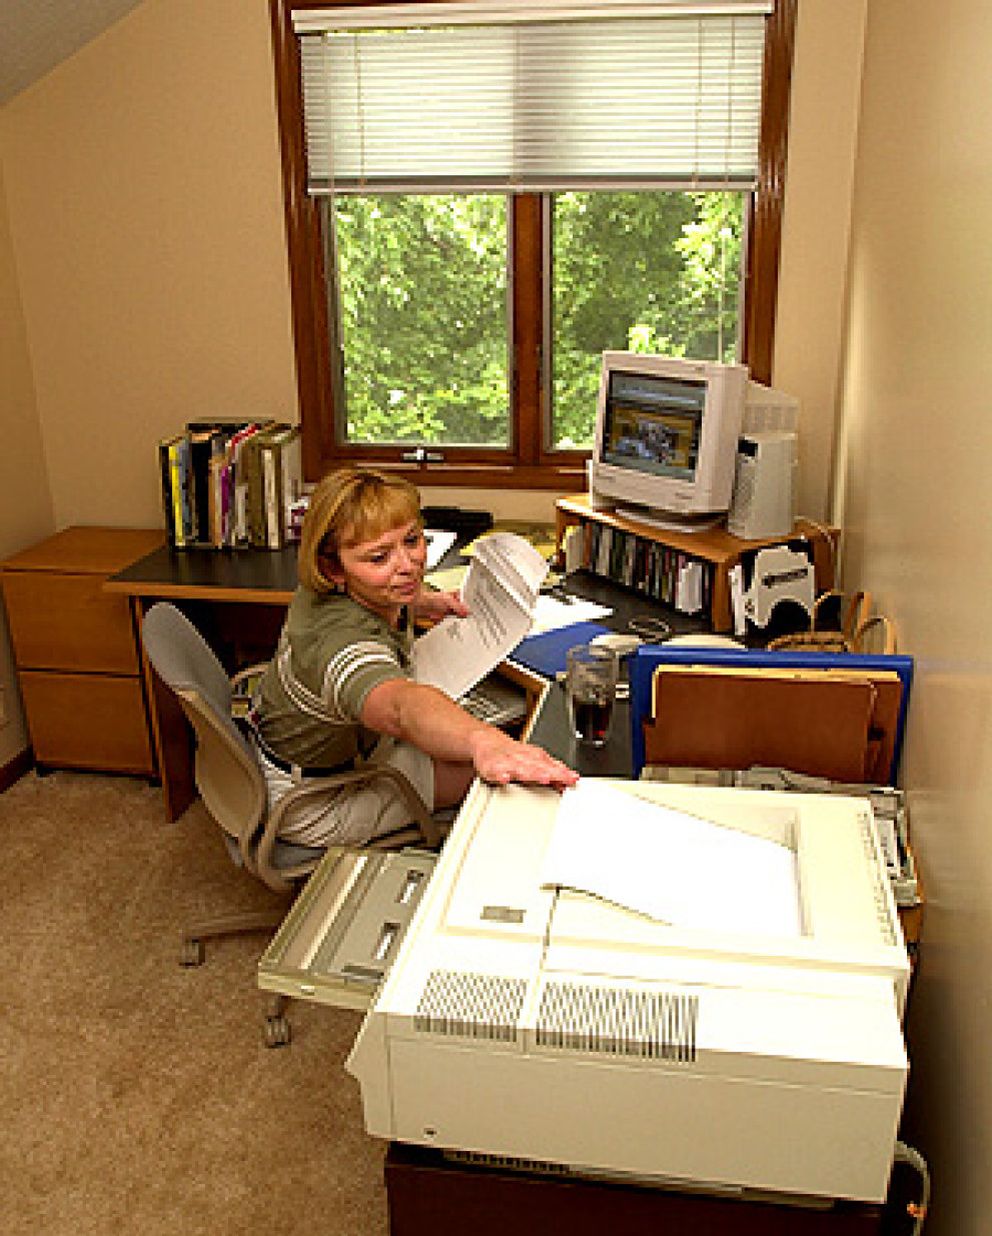 Foto: Teletrabajo: la oficina en casa o el placer de trabajar en pijama